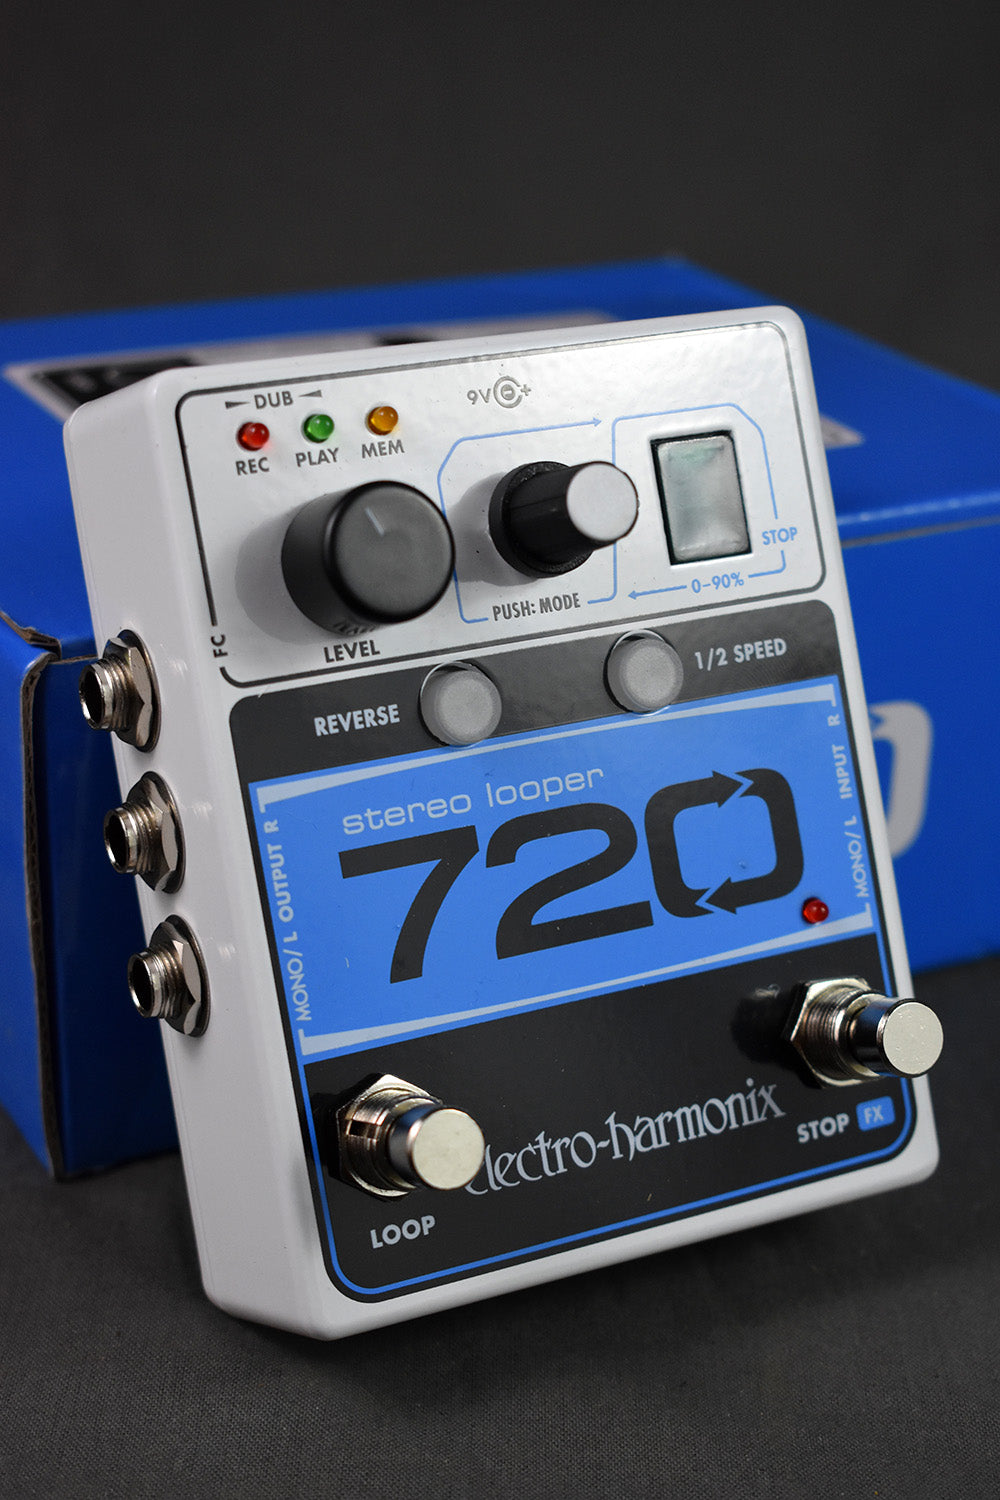 Electro Harmonix 720 Stereo Looper